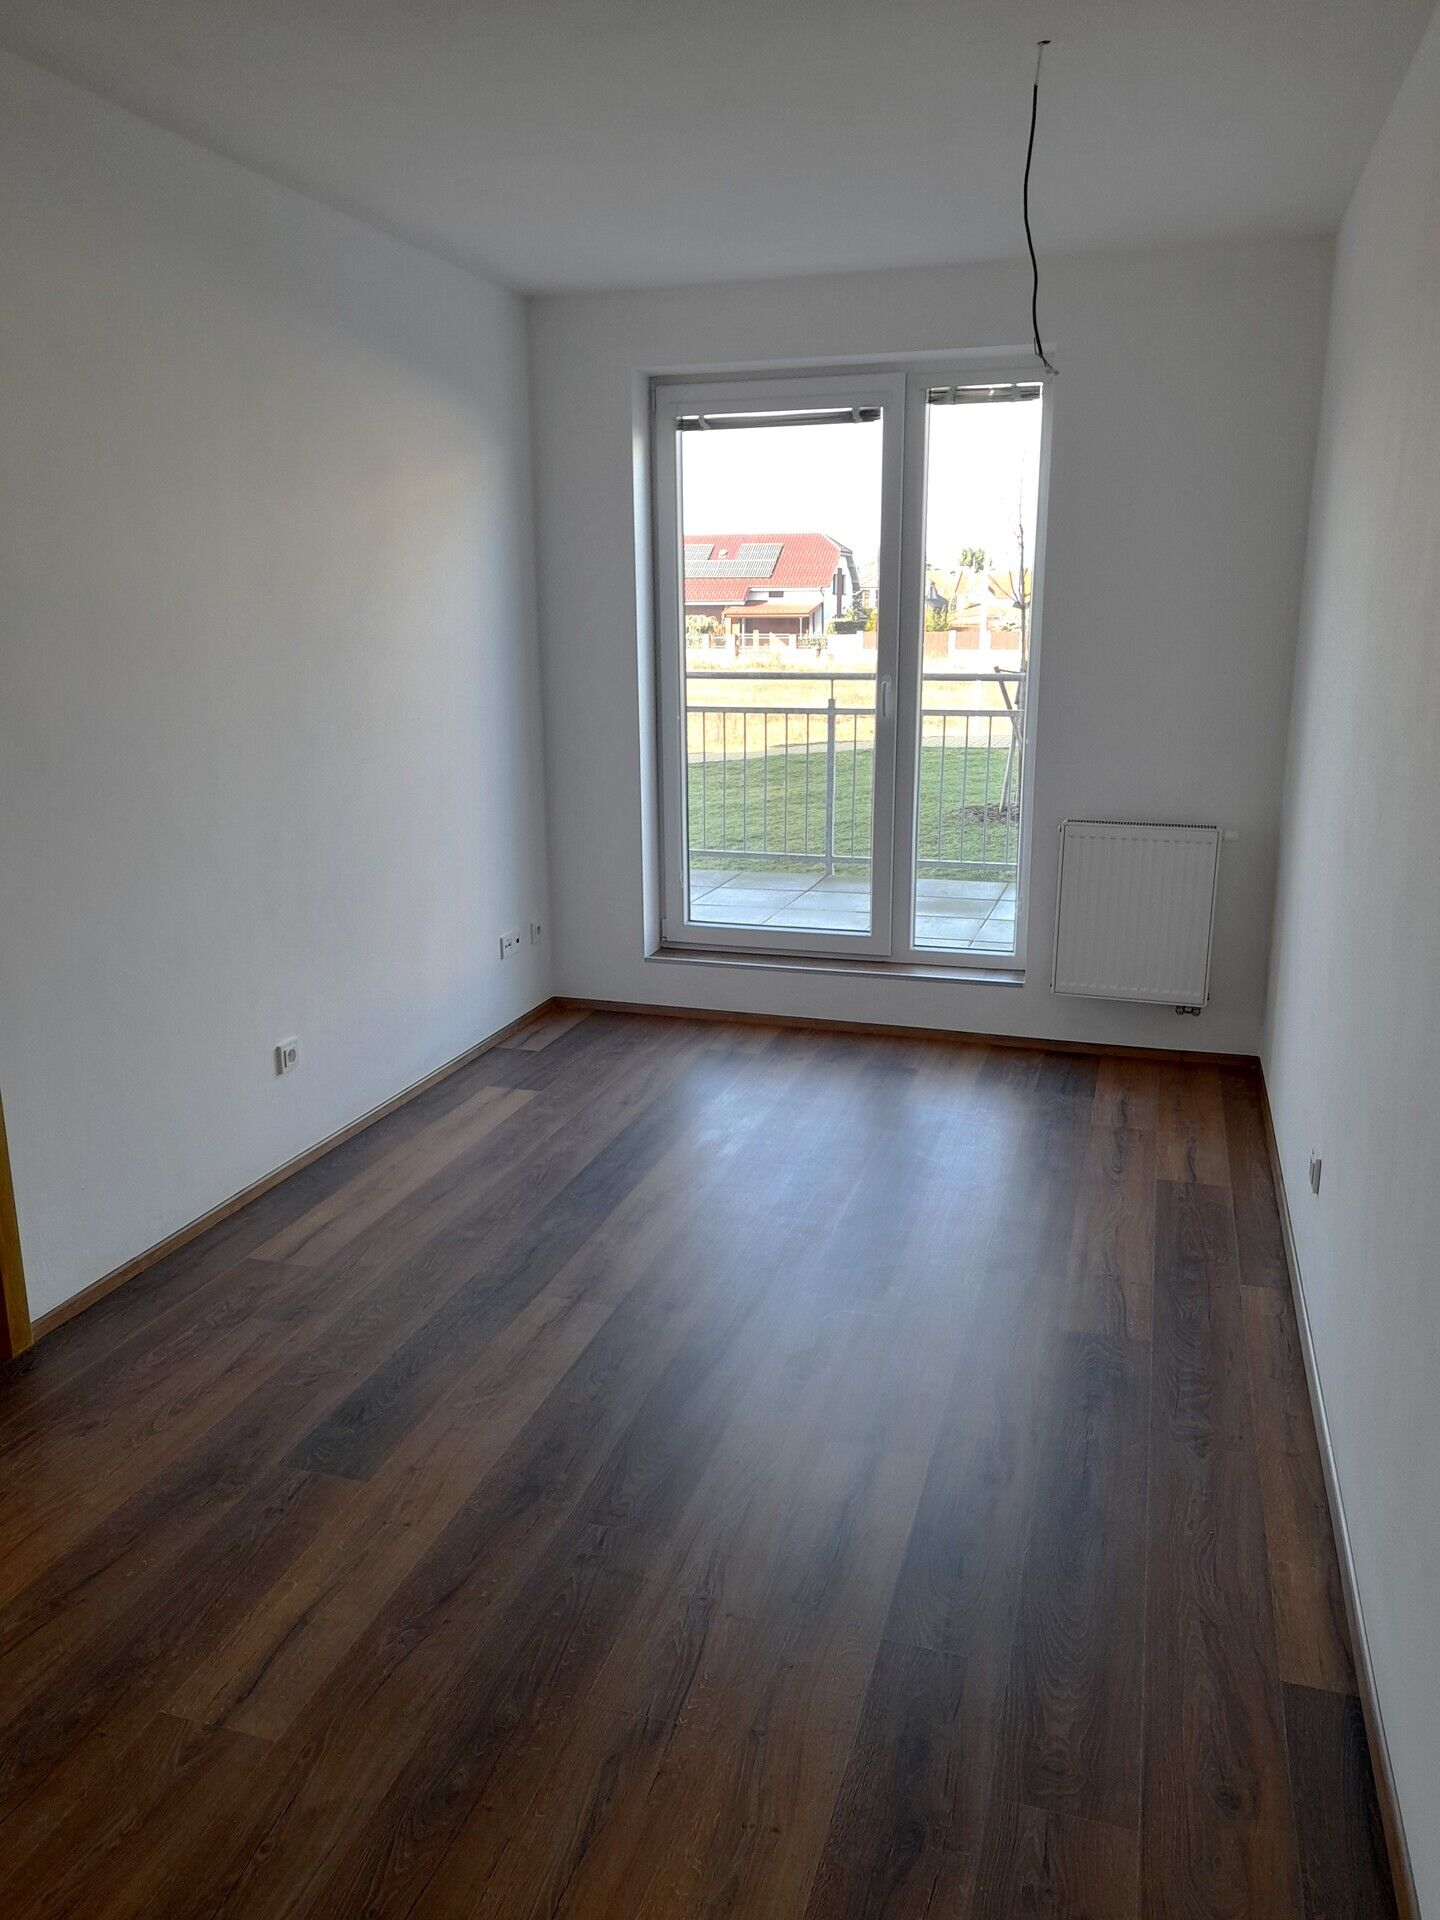 Prodej hezkého nového bytu 2+kk, 46 m2, s terasou 14 m2 v širším centru Poděbrad, okr. Nymburk